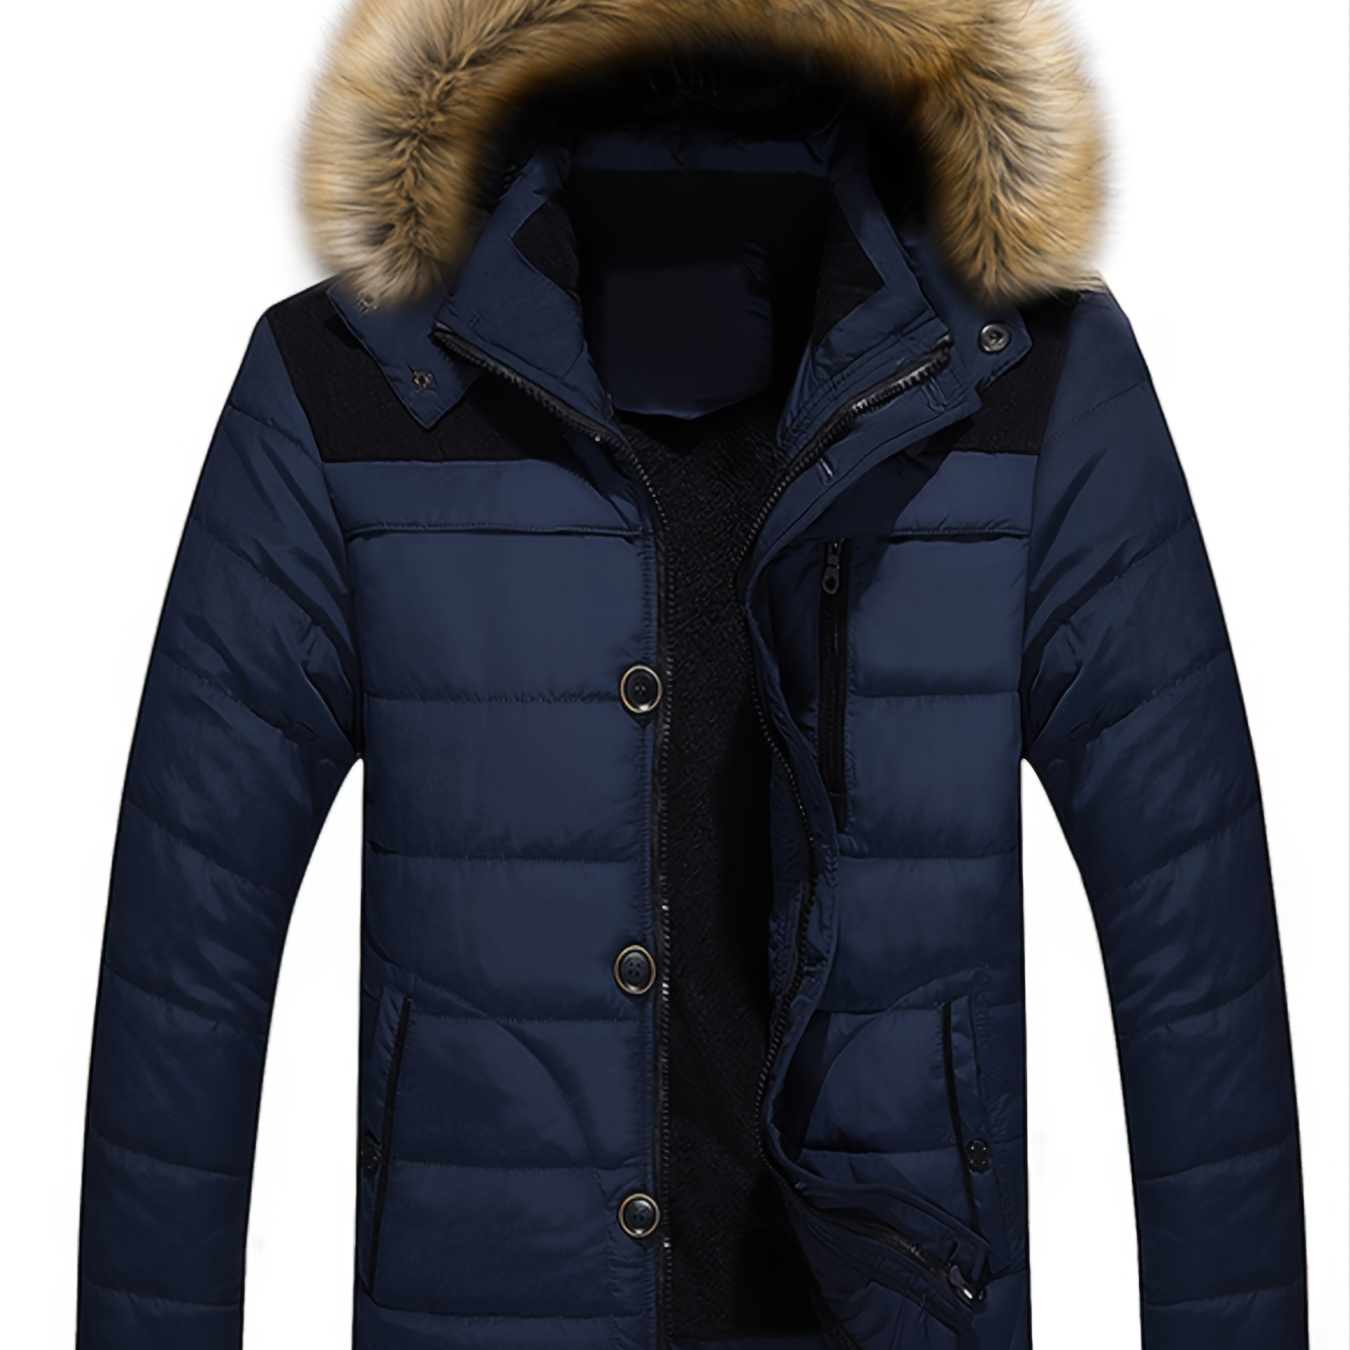 Men's Fall Winter Fleece Parka Padded Jacket With Faux Fur Hoodie ...